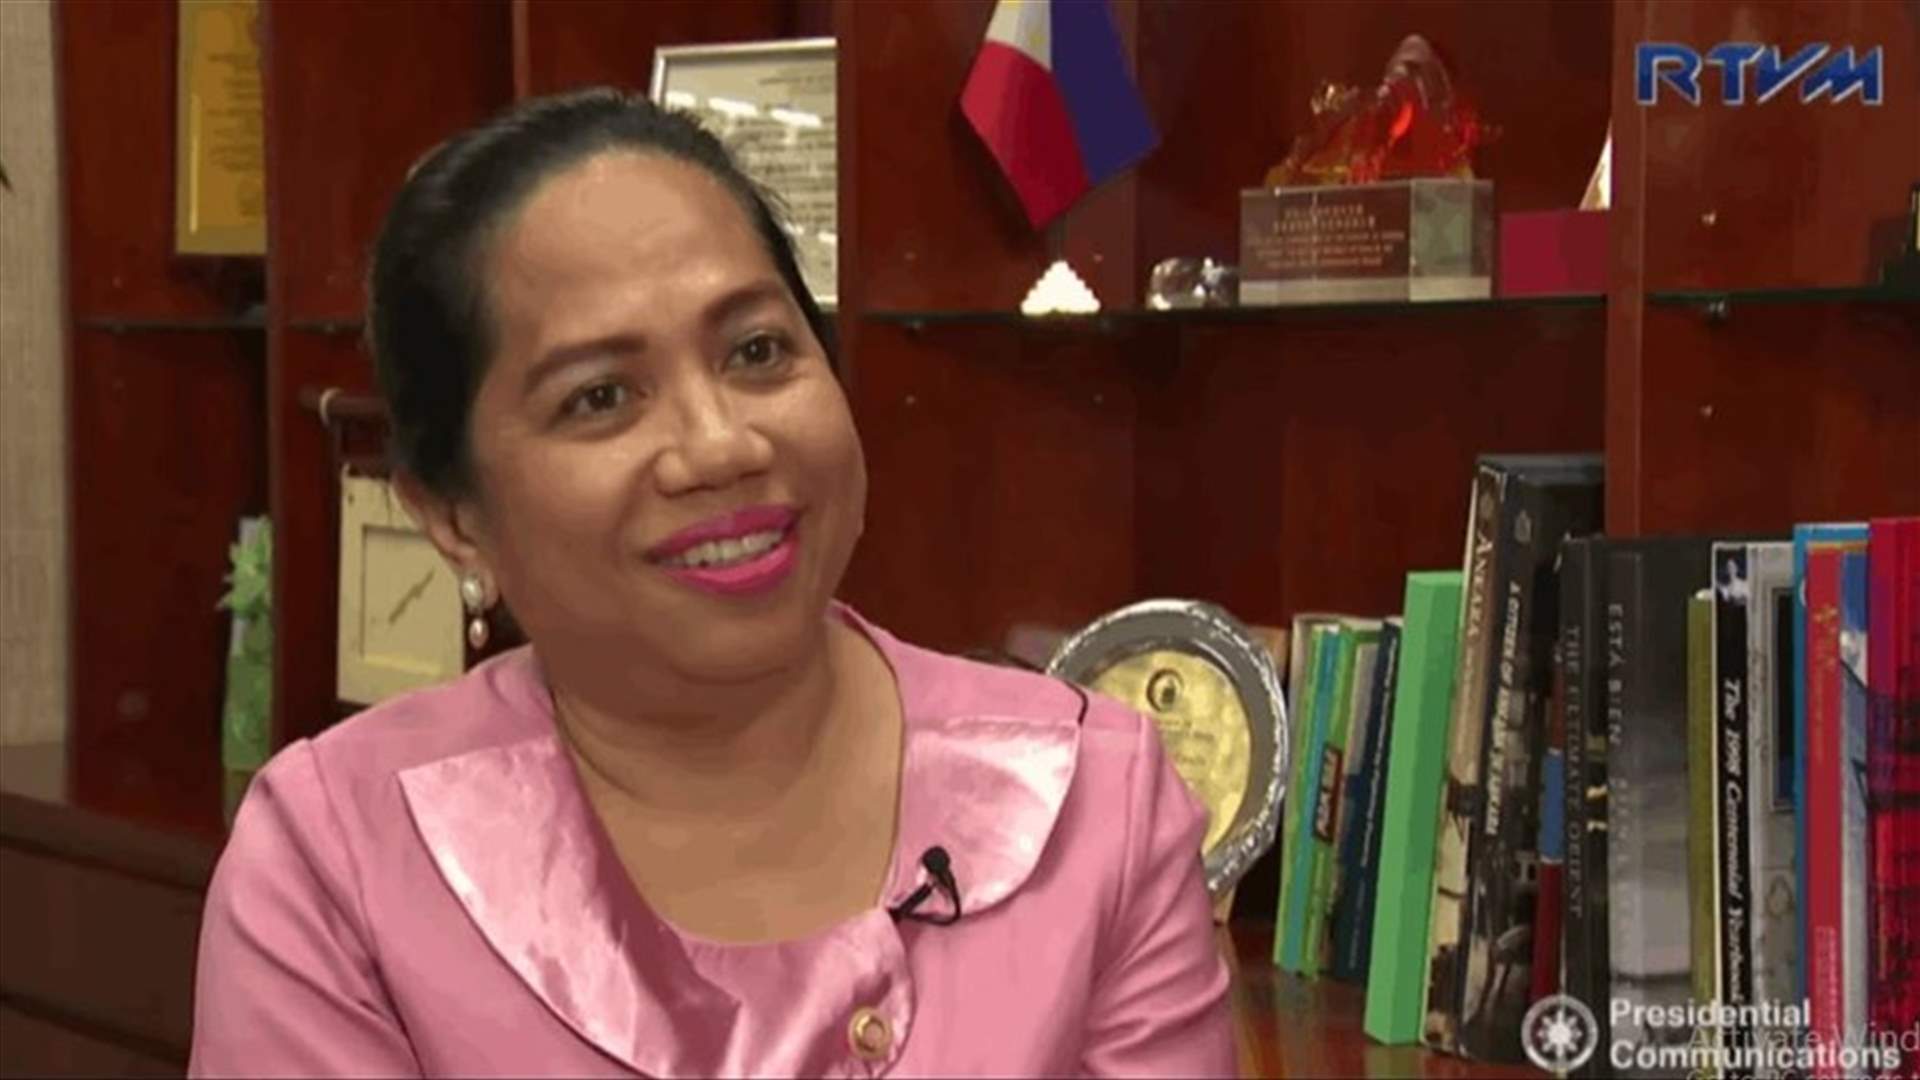 وفاة سفيرة الفلبين لدى لبنان بعد إصابتها بفيروس كورونا